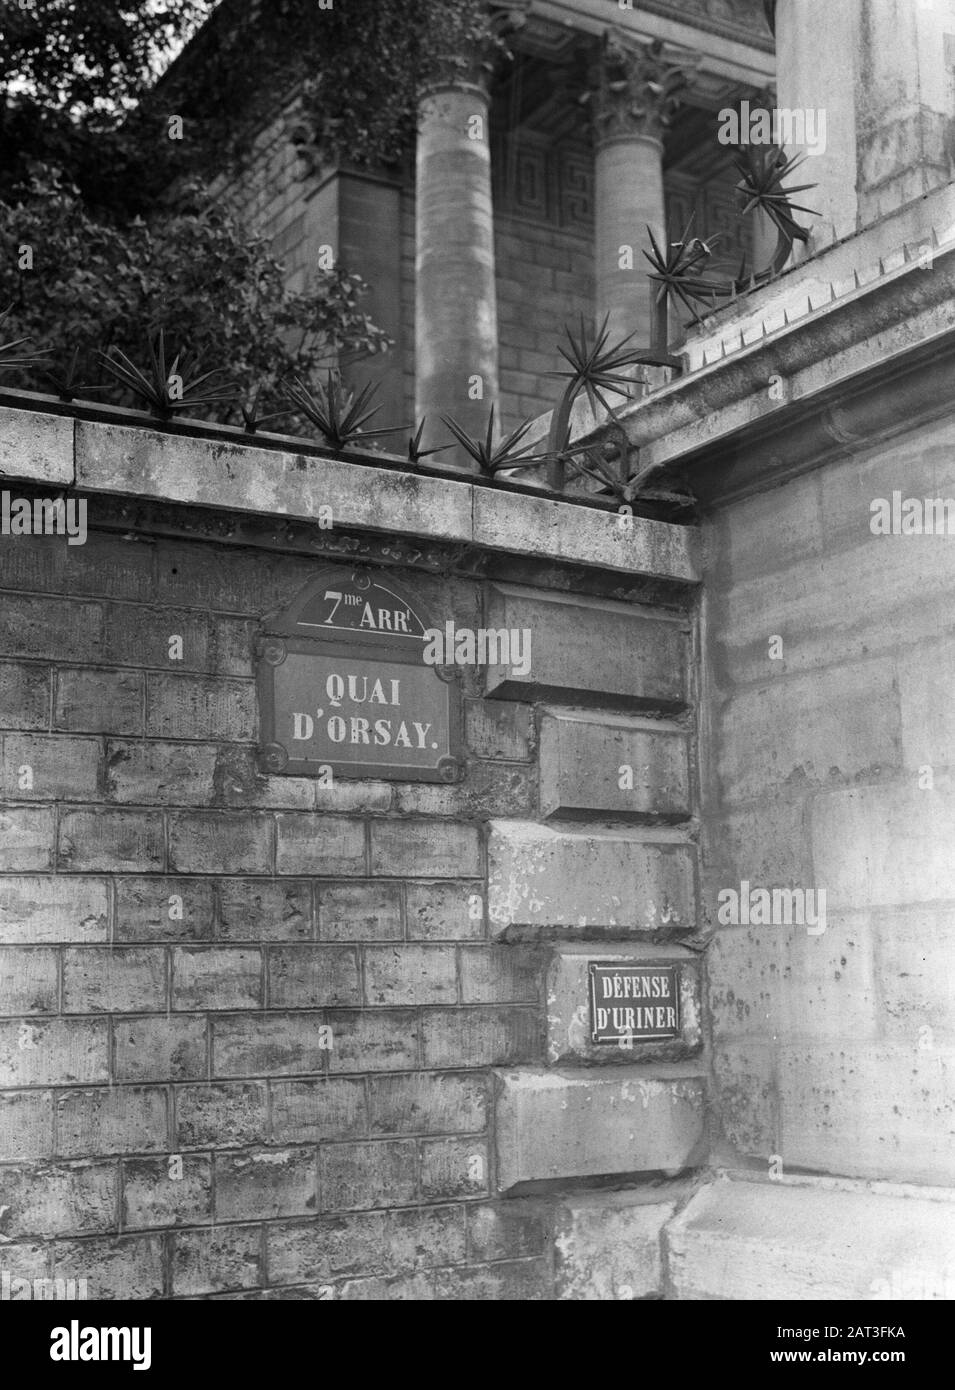 Reportage Paris  Corner of the Quai d'Orsay near the Chambre des Deputés (Défense d'uriner) Date: 1935 Location: France, Paris Keywords: Street images Stock Photo